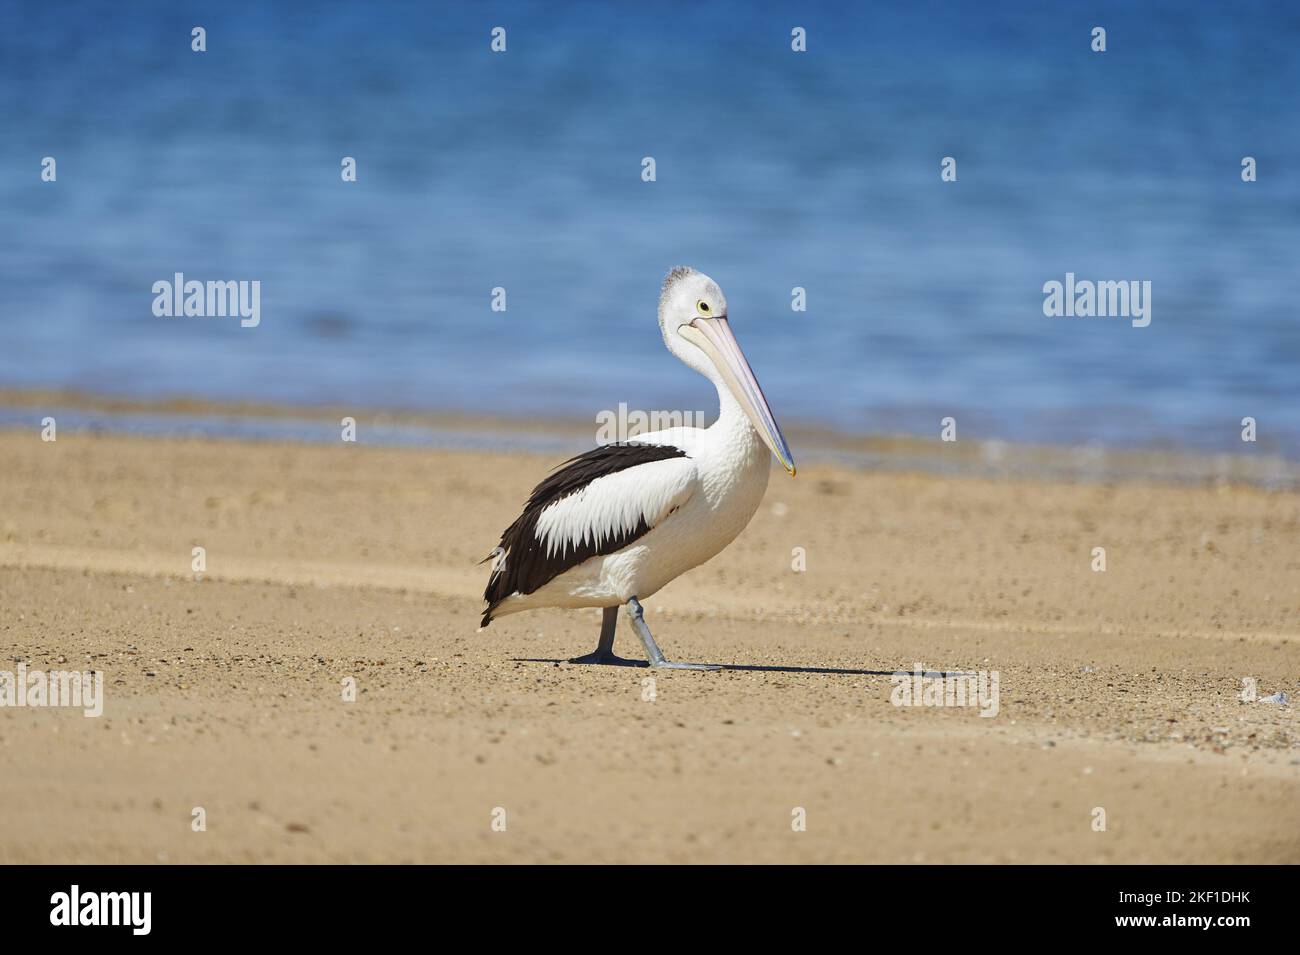 Walking Australian Pelican Stockfoto